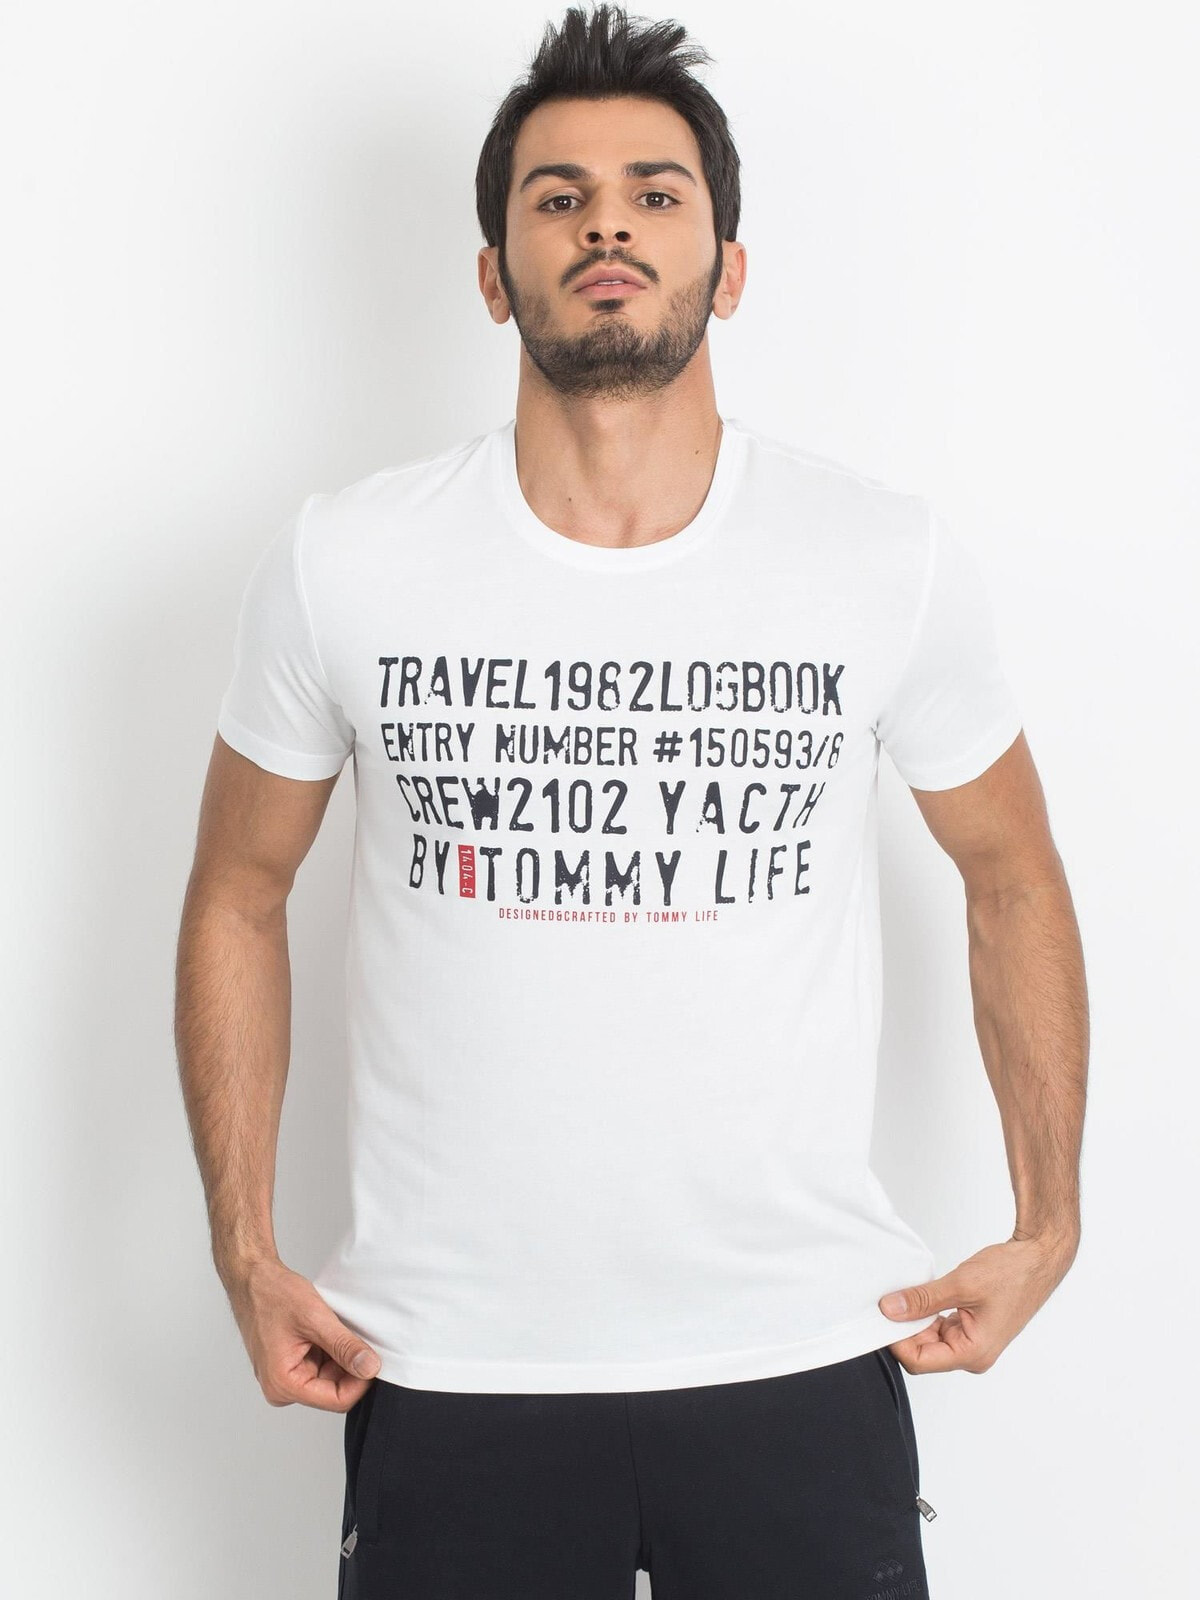 Мужская футболка повседневная белая с надписью  Factory Price-298-TS-TL-87282.05X